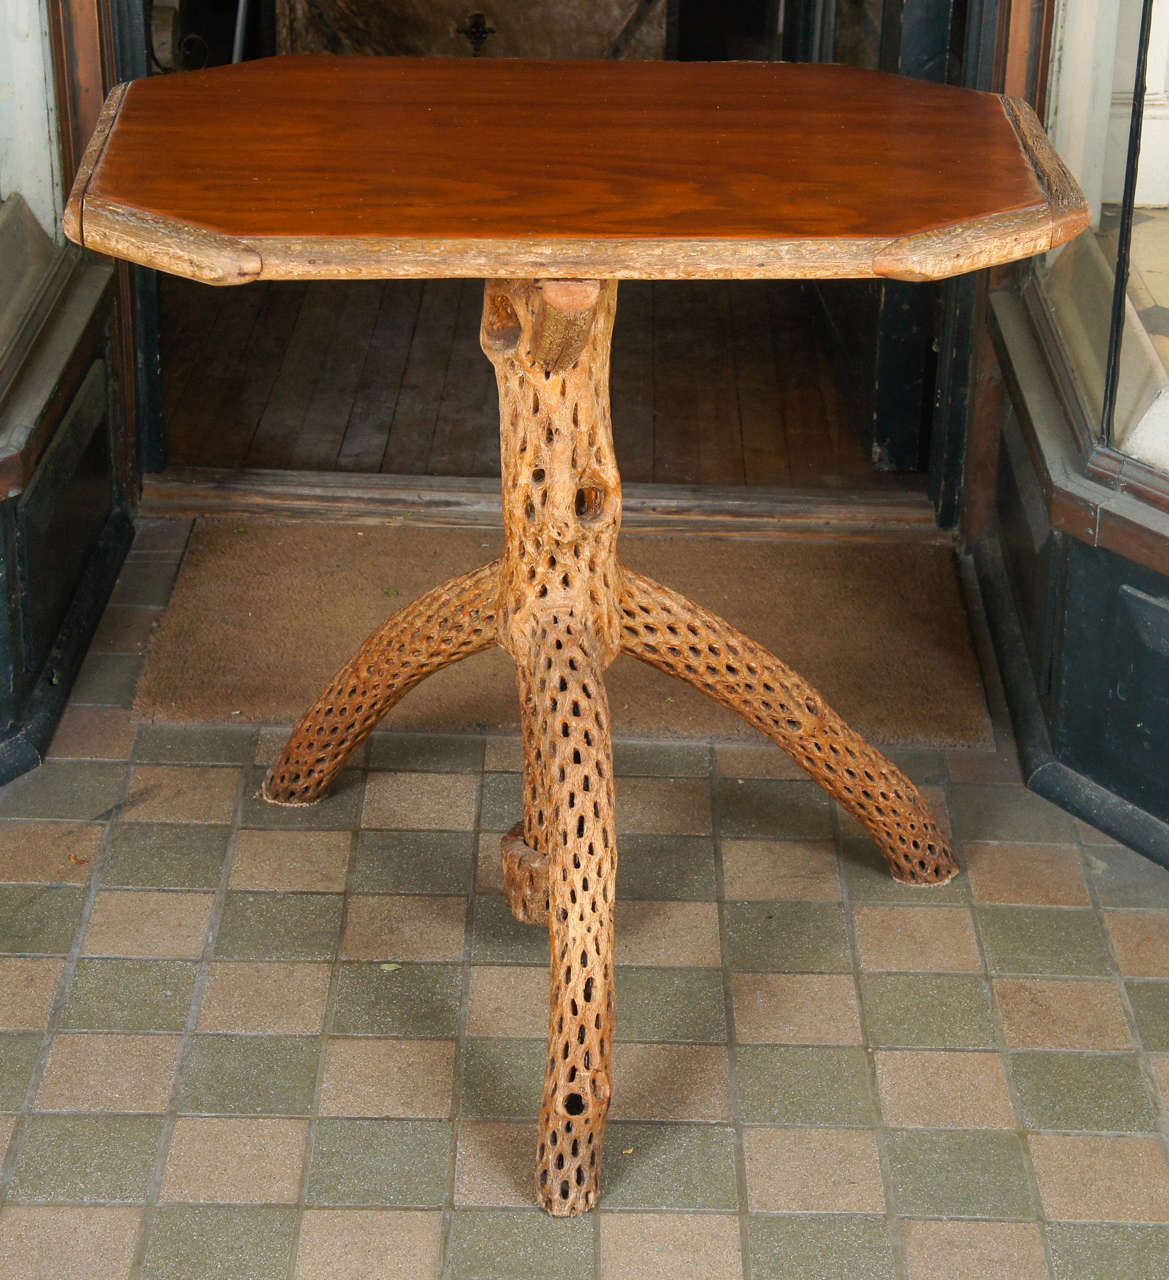 Dieser interessante und ungewöhnliche Tisch, der um 1930 im Südwesten hergestellt wurde, ist aus Saguaro-Holz gefertigt, einer langsam wachsenden, dichten Kaktusart mit einer charakteristischen Außenhülle, die für dekorative Zwecke verwendet wird.